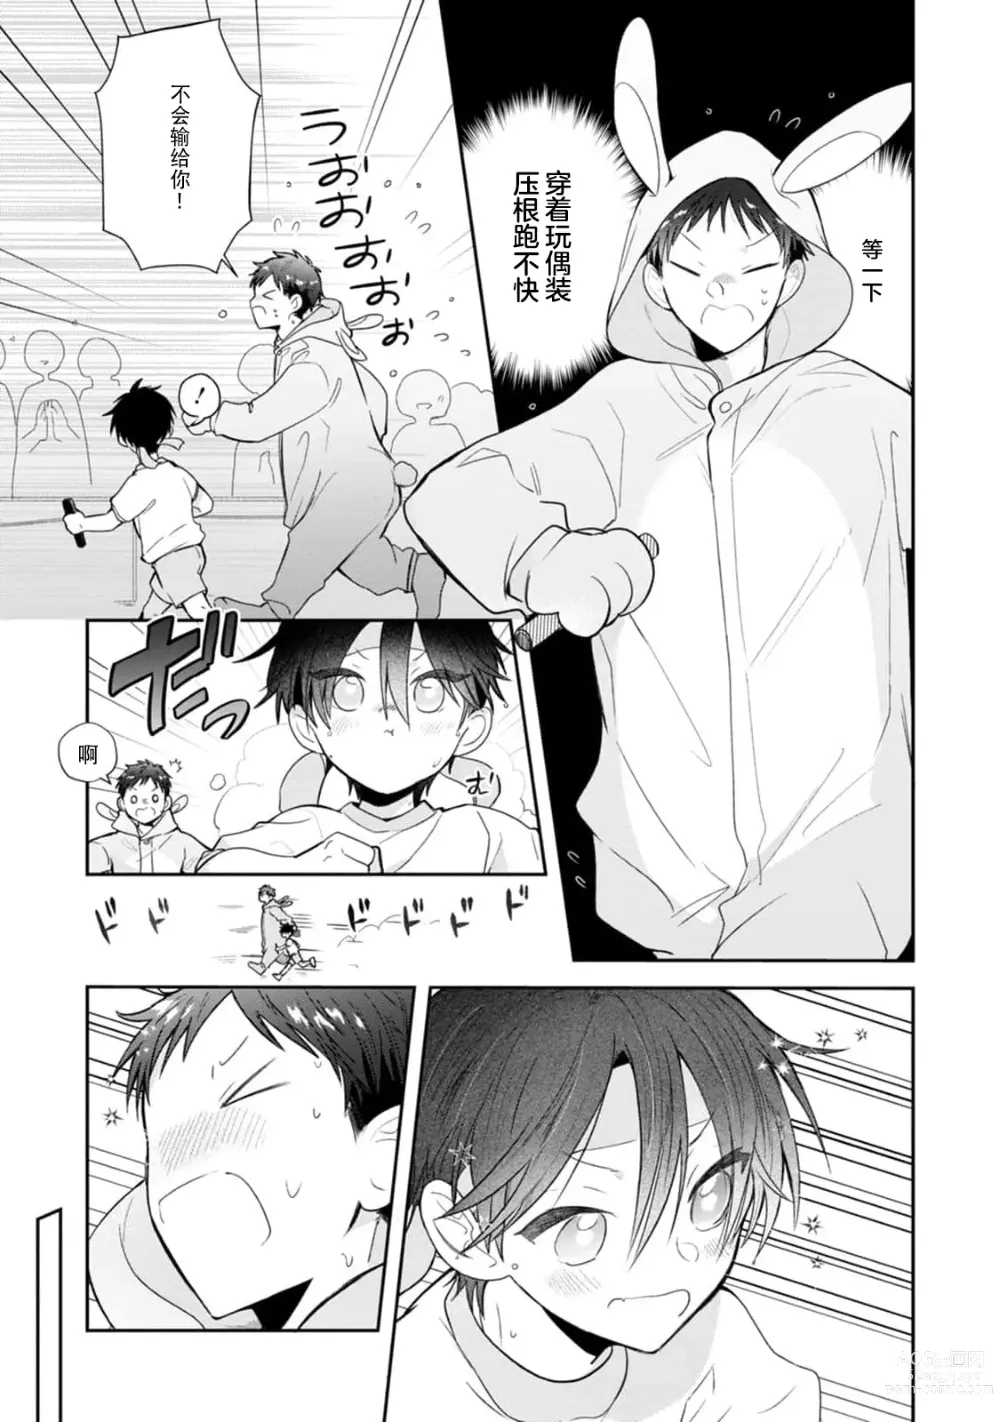 Page 133 of manga 叶羽老师全部是第一次 1-4